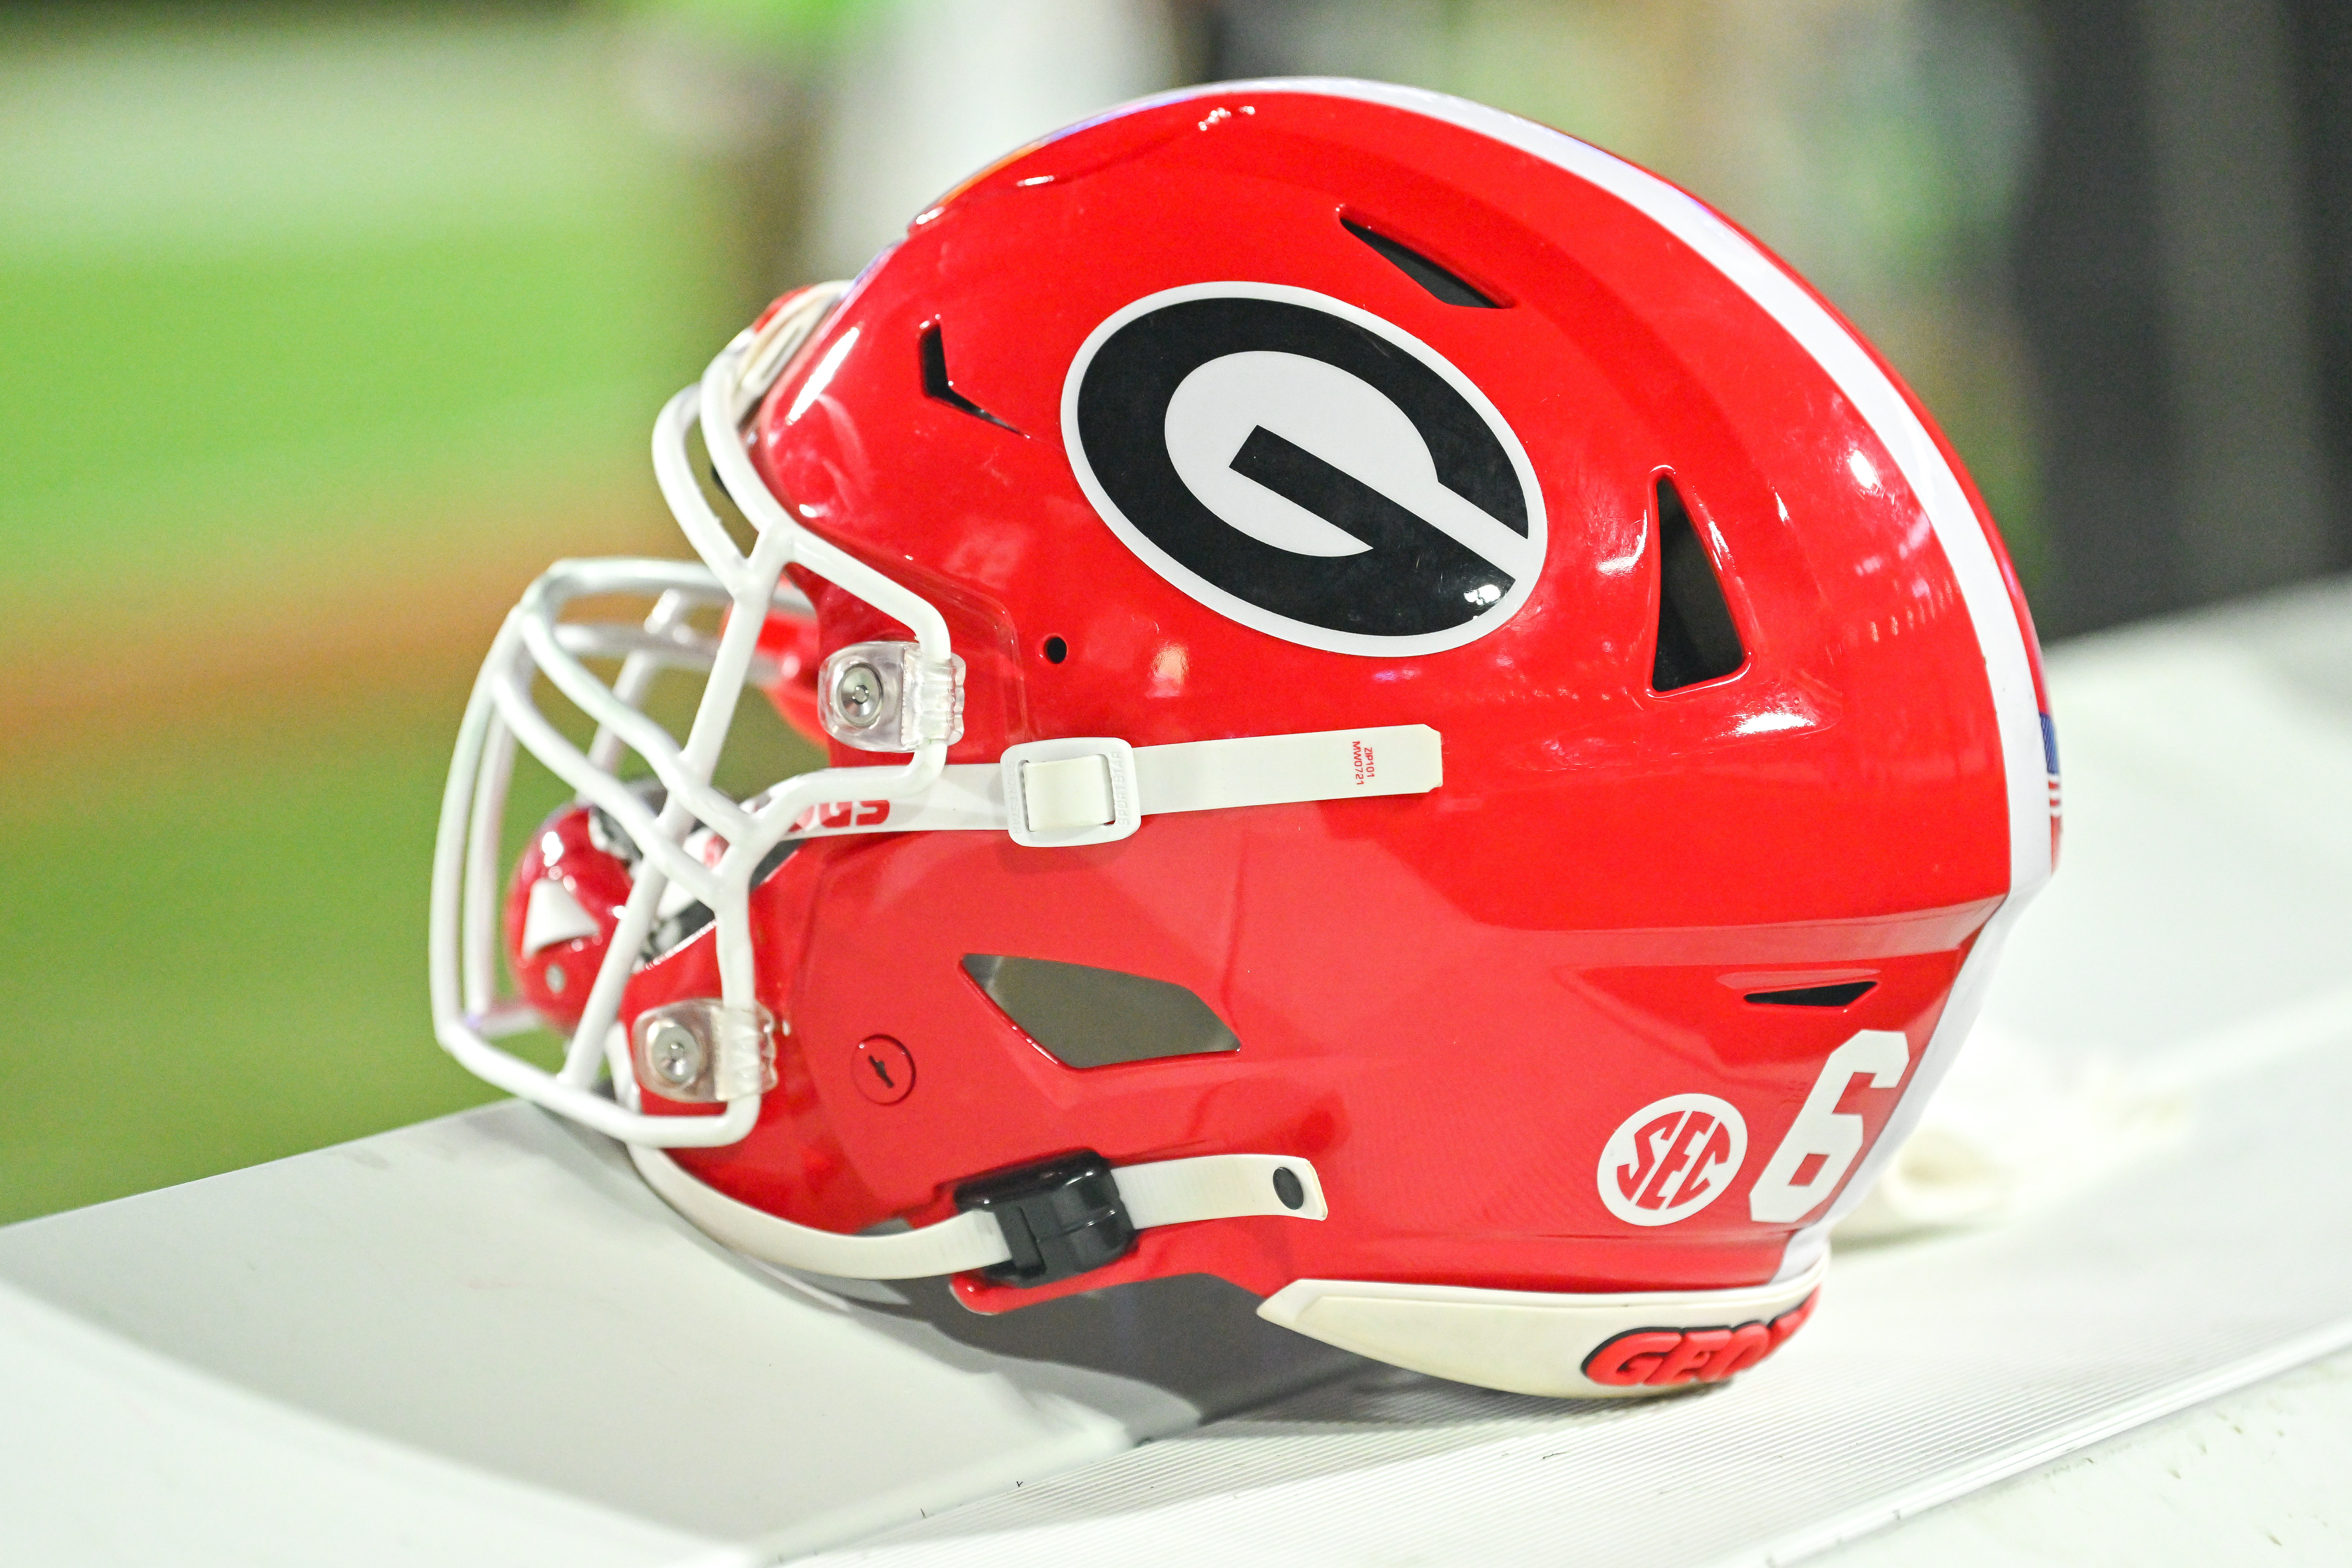 Georgia Bulldogs - The Road to Omaha will begin in Athens! Georgia